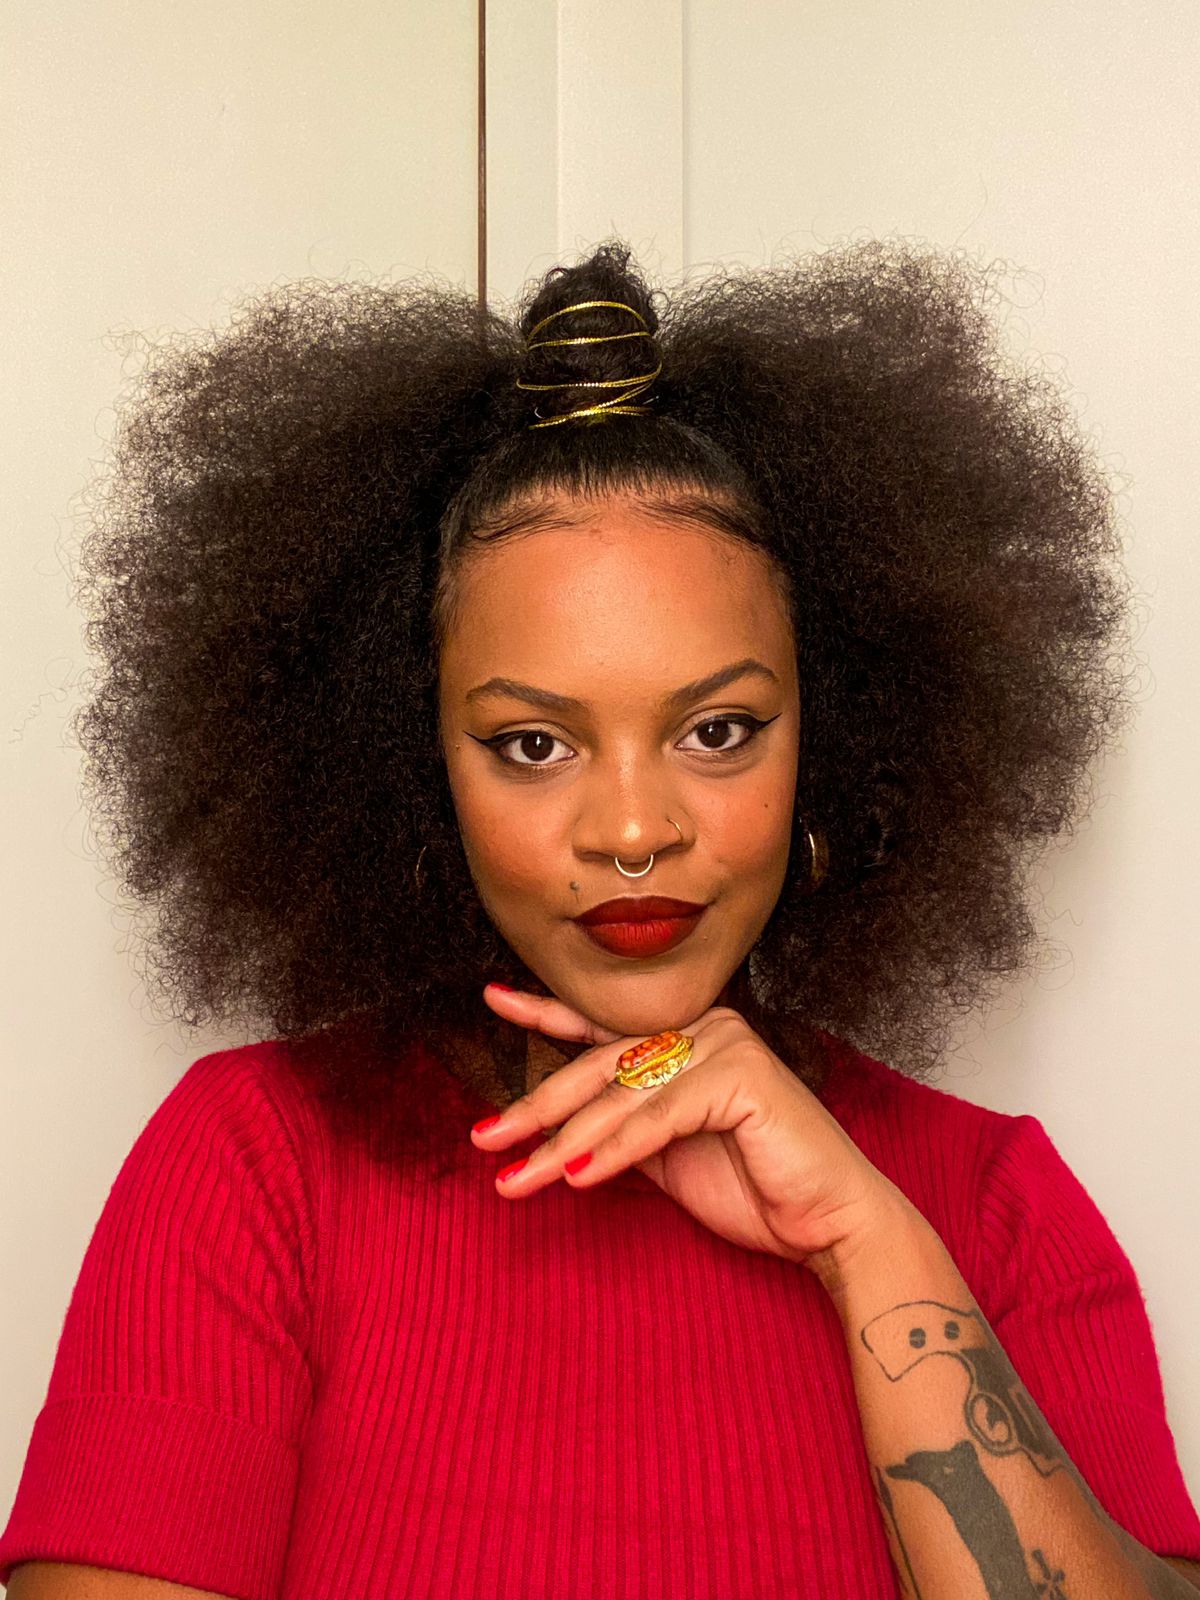 Influencers discutem a relação do cabelo afro com a autoestima: “Eu descobri que o racismo existe”